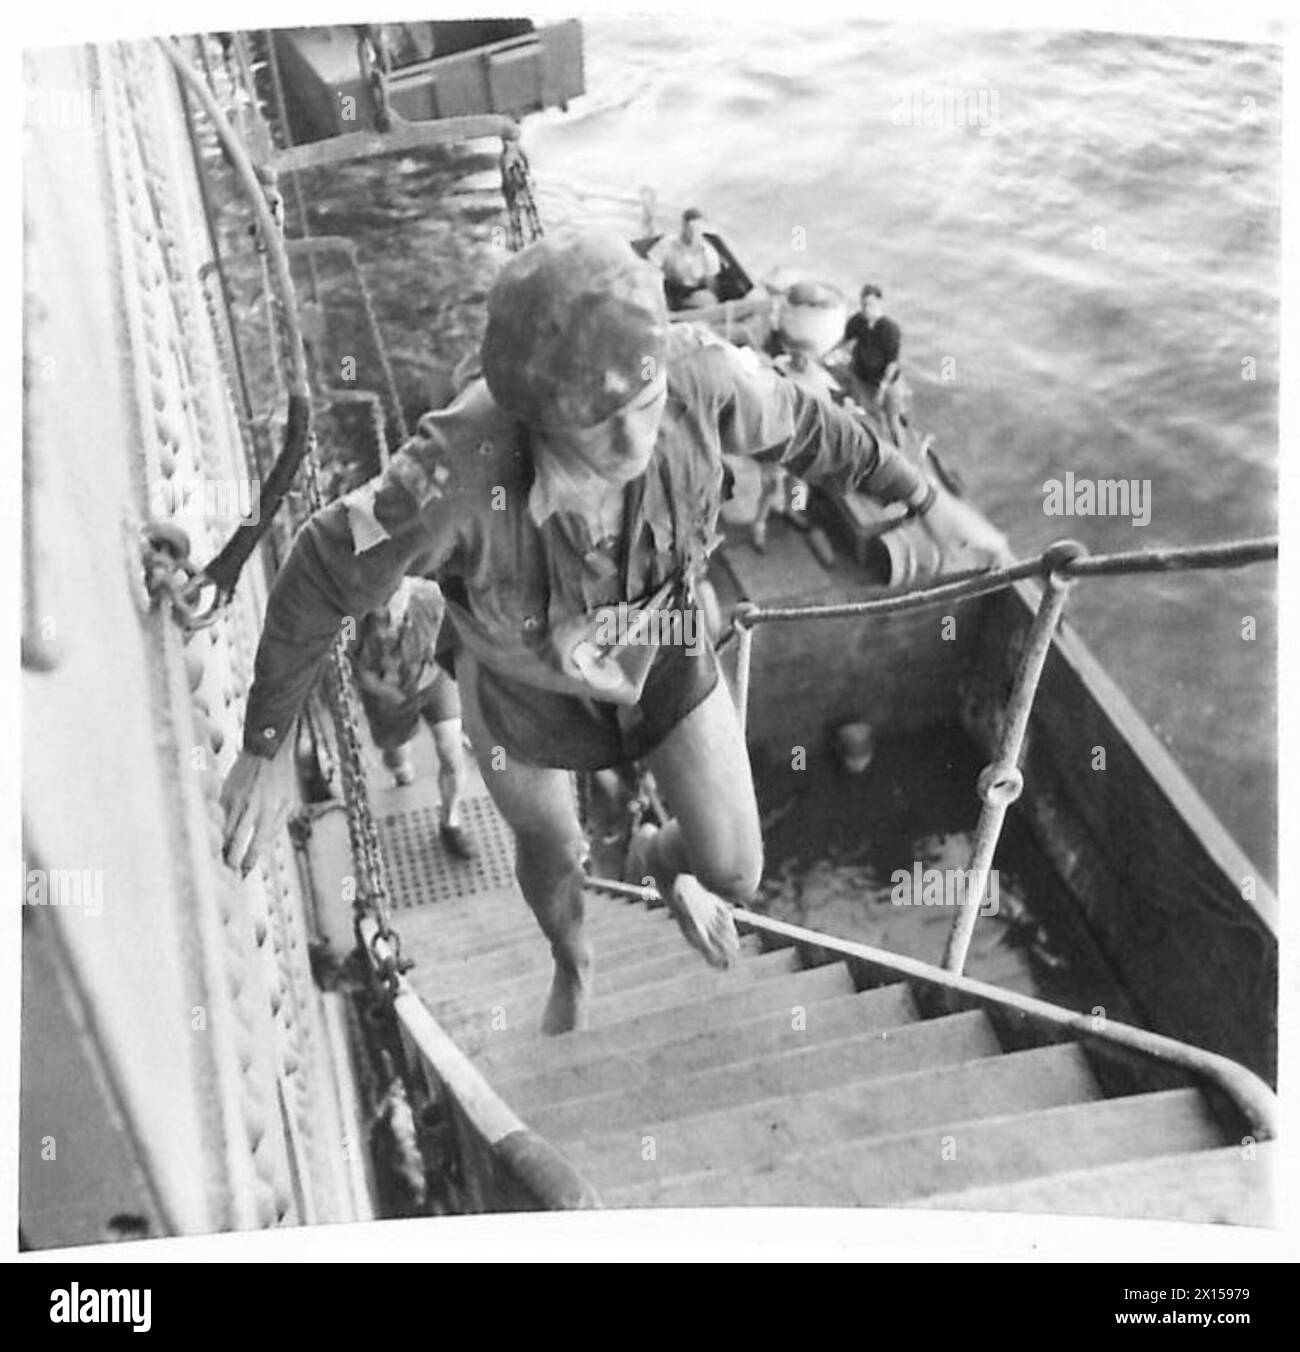 INVASION VON SICILLY - Eine Gruppe der 38. Segelflieger wurde von ihrem Kurs weggesprengt und landete im Meer. Sie wurden gerettet, nachdem sie sieben Stunden über Wasser waren. Auf diesem Bild kommt einer ihrer Kollegen von einem Landungsboot der britischen Armee an Bord Stockfoto